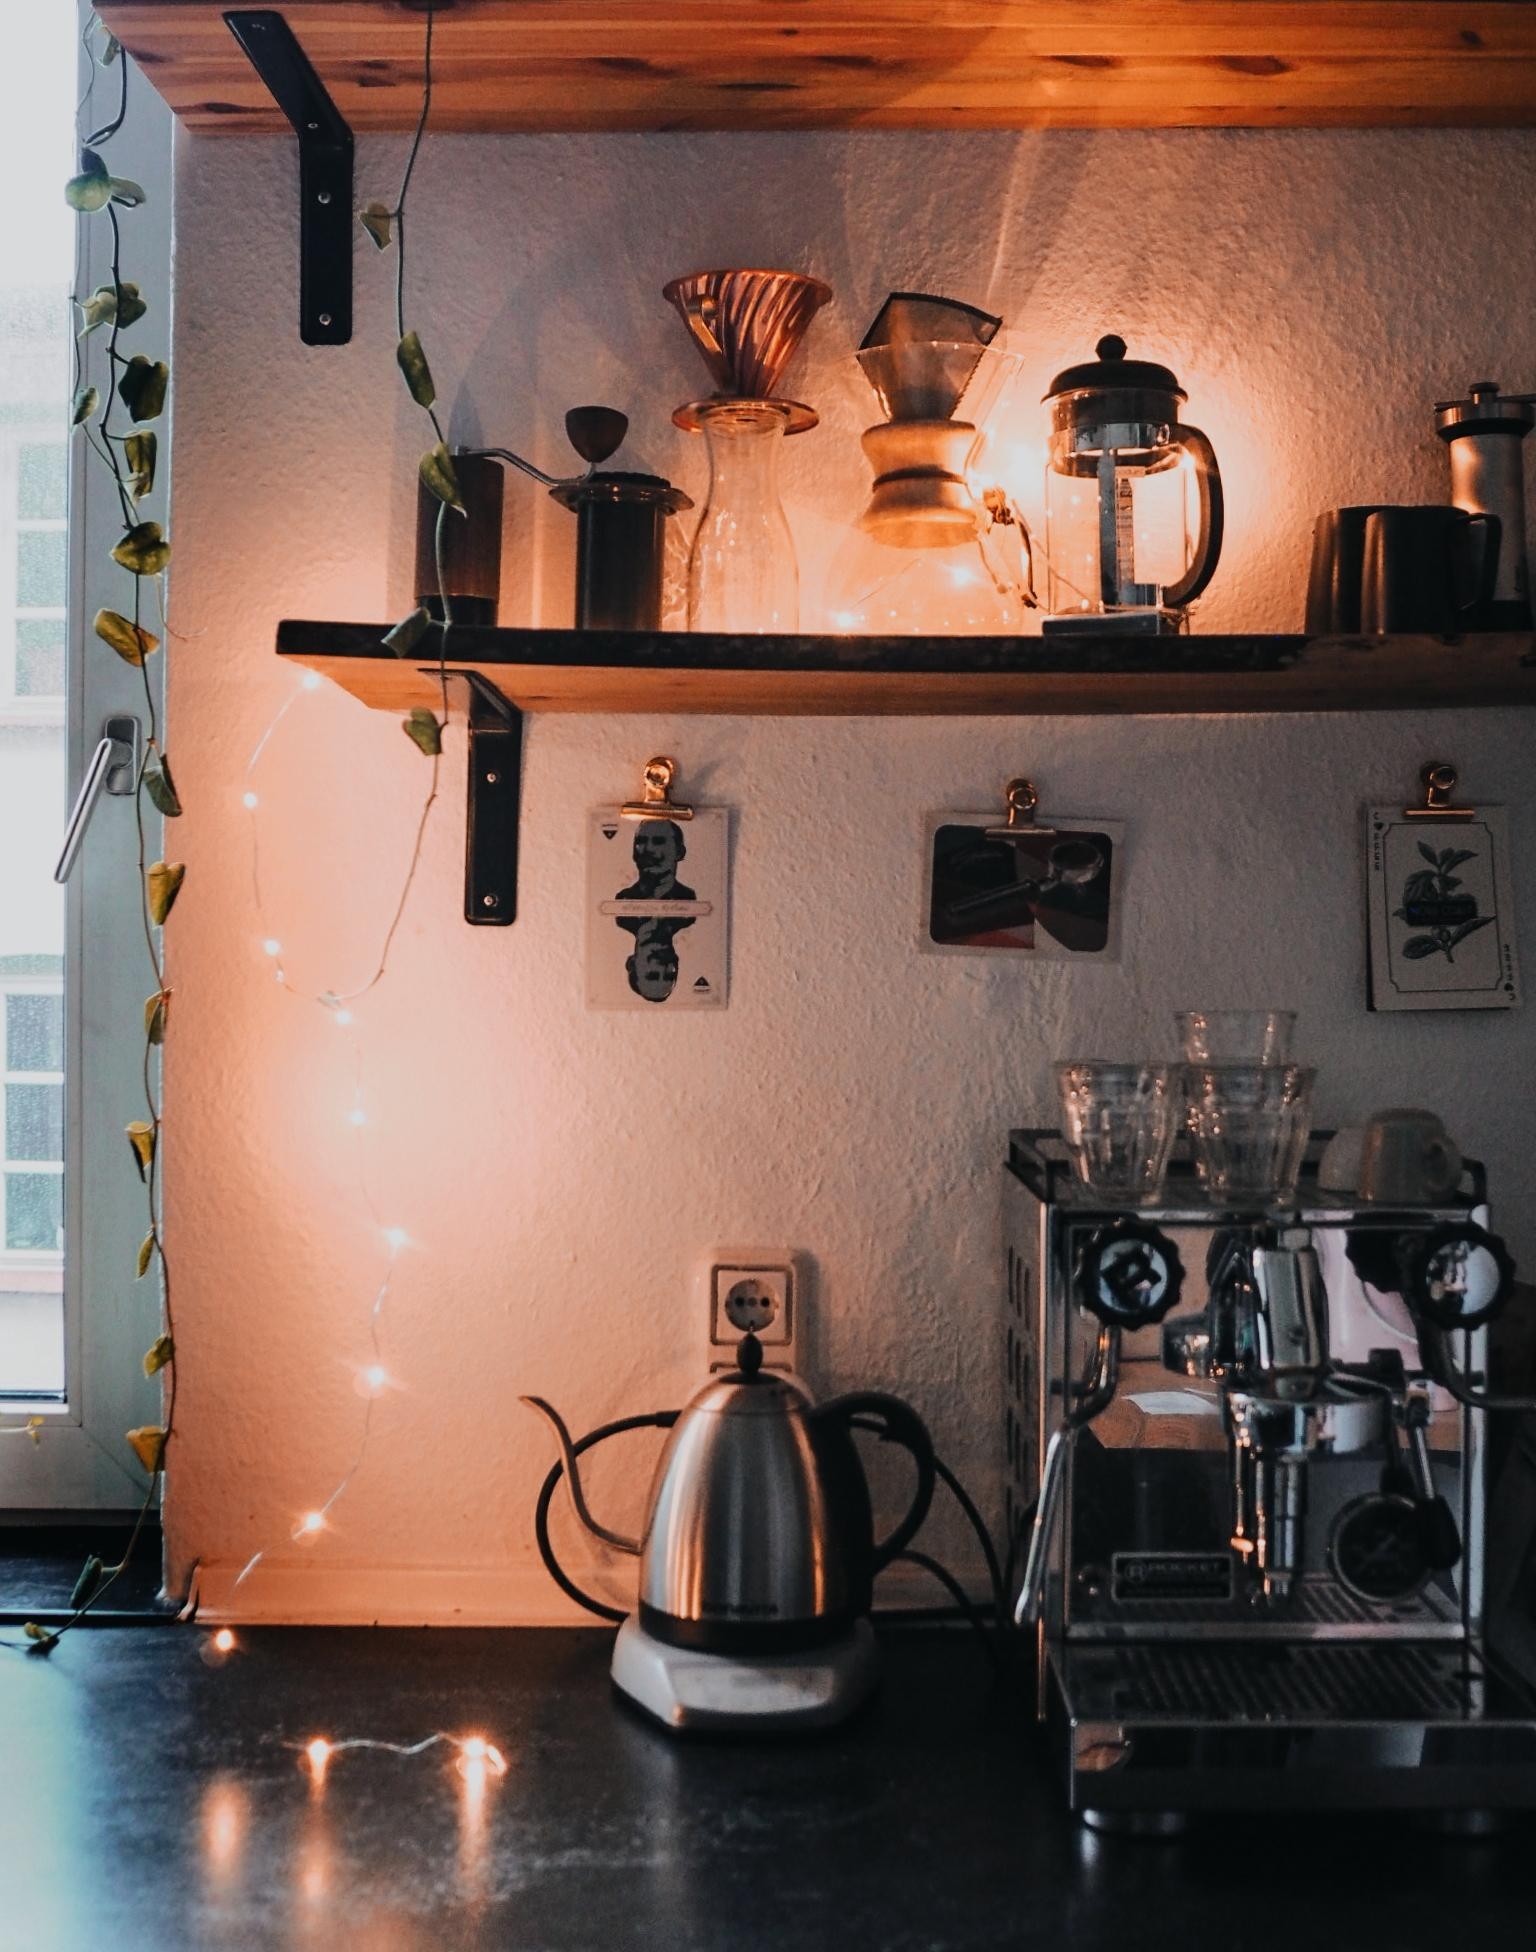 Coffee is always a good idea. 

#coffee #kaffee #küche #interior #kitchen  